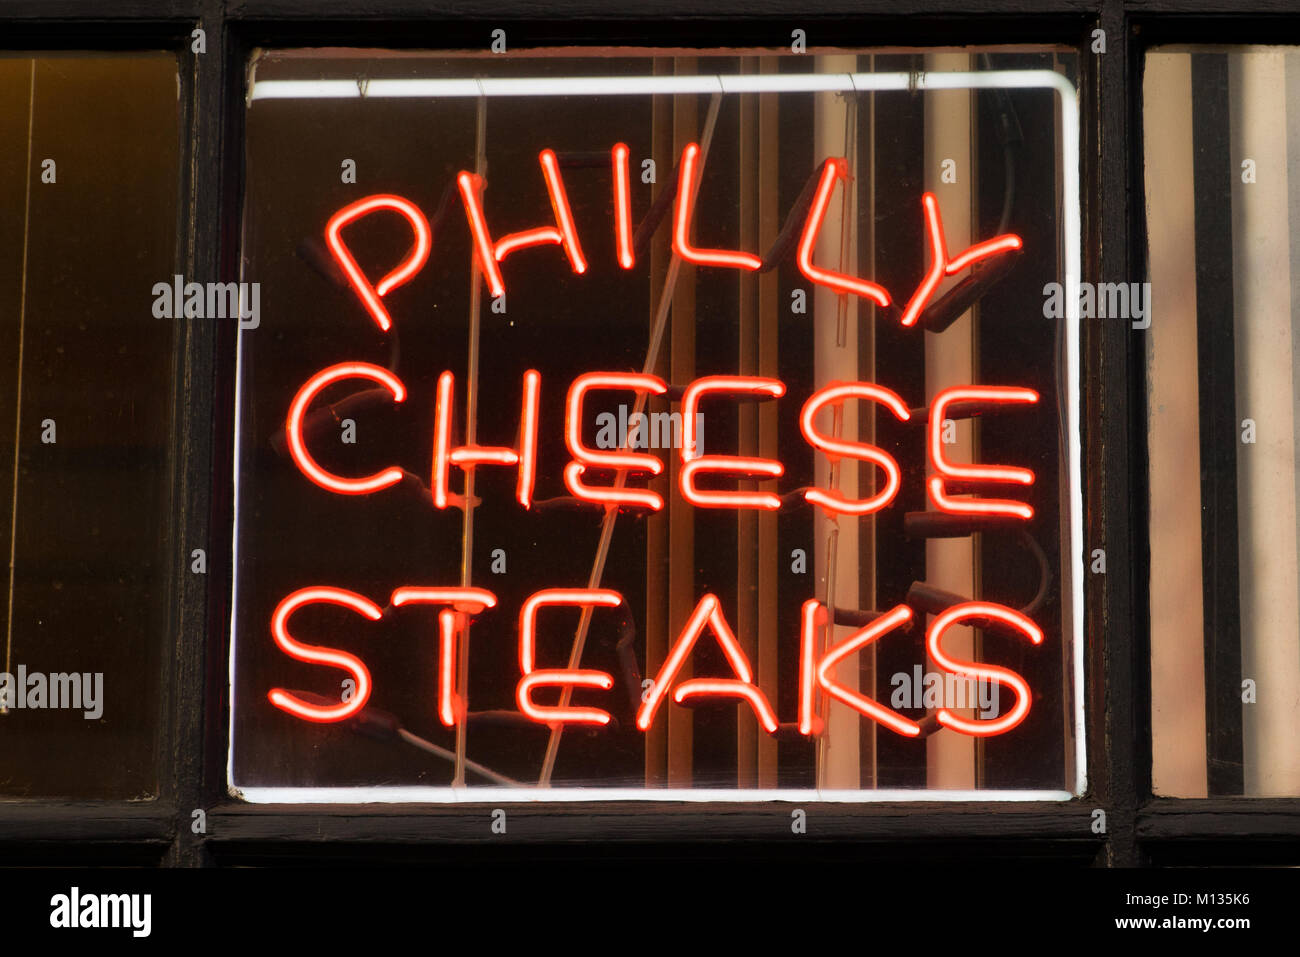 PHILADELPHIA, PA - 13 décembre 2014 : Philadelphia Philly Cheese Steak en néon dans un restaurant local Banque D'Images